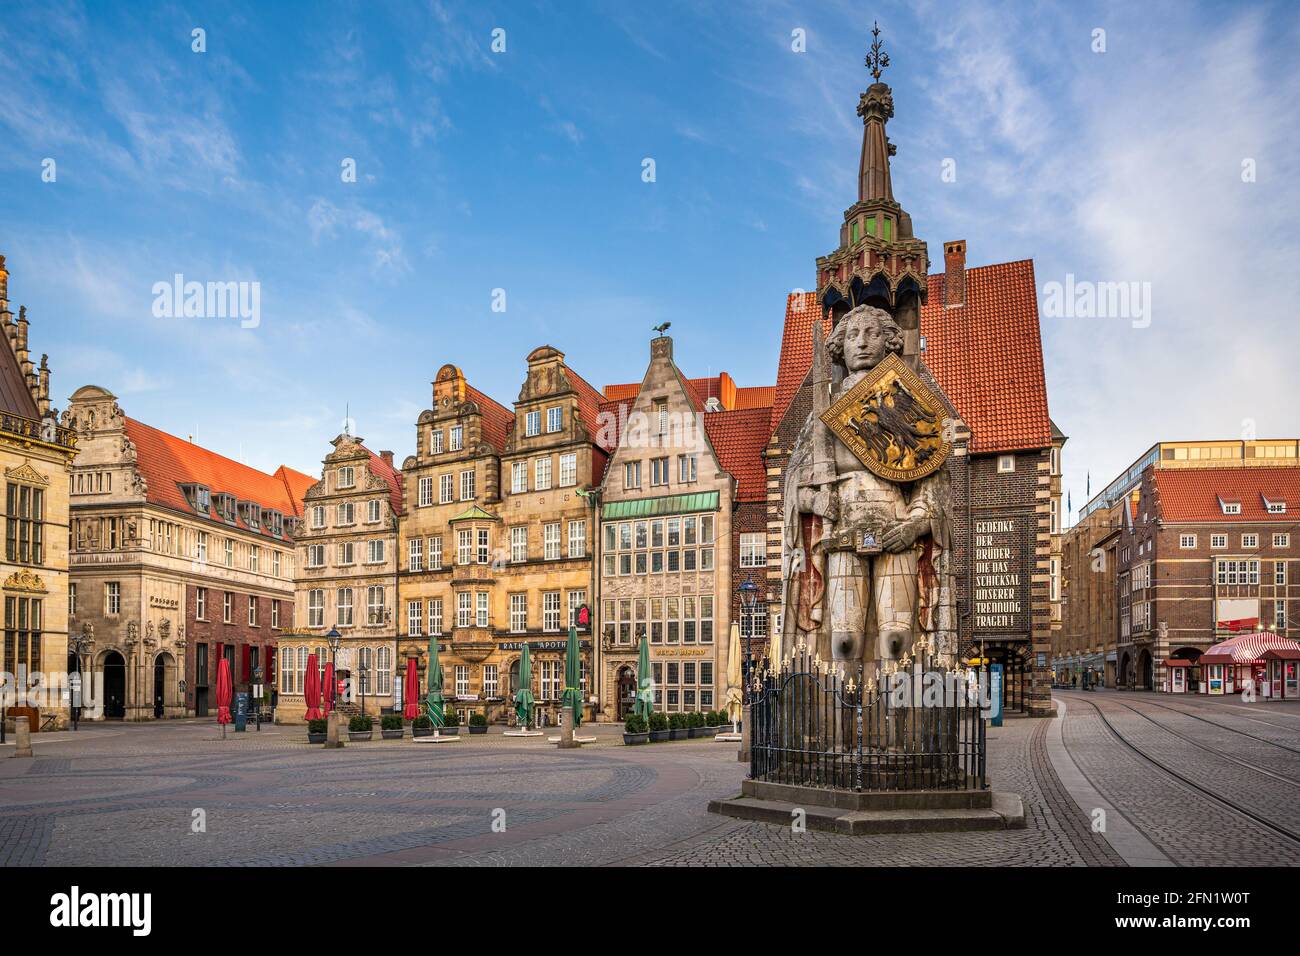 Place du marché dans la ville historique de Brême, Allemagne Banque D'Images